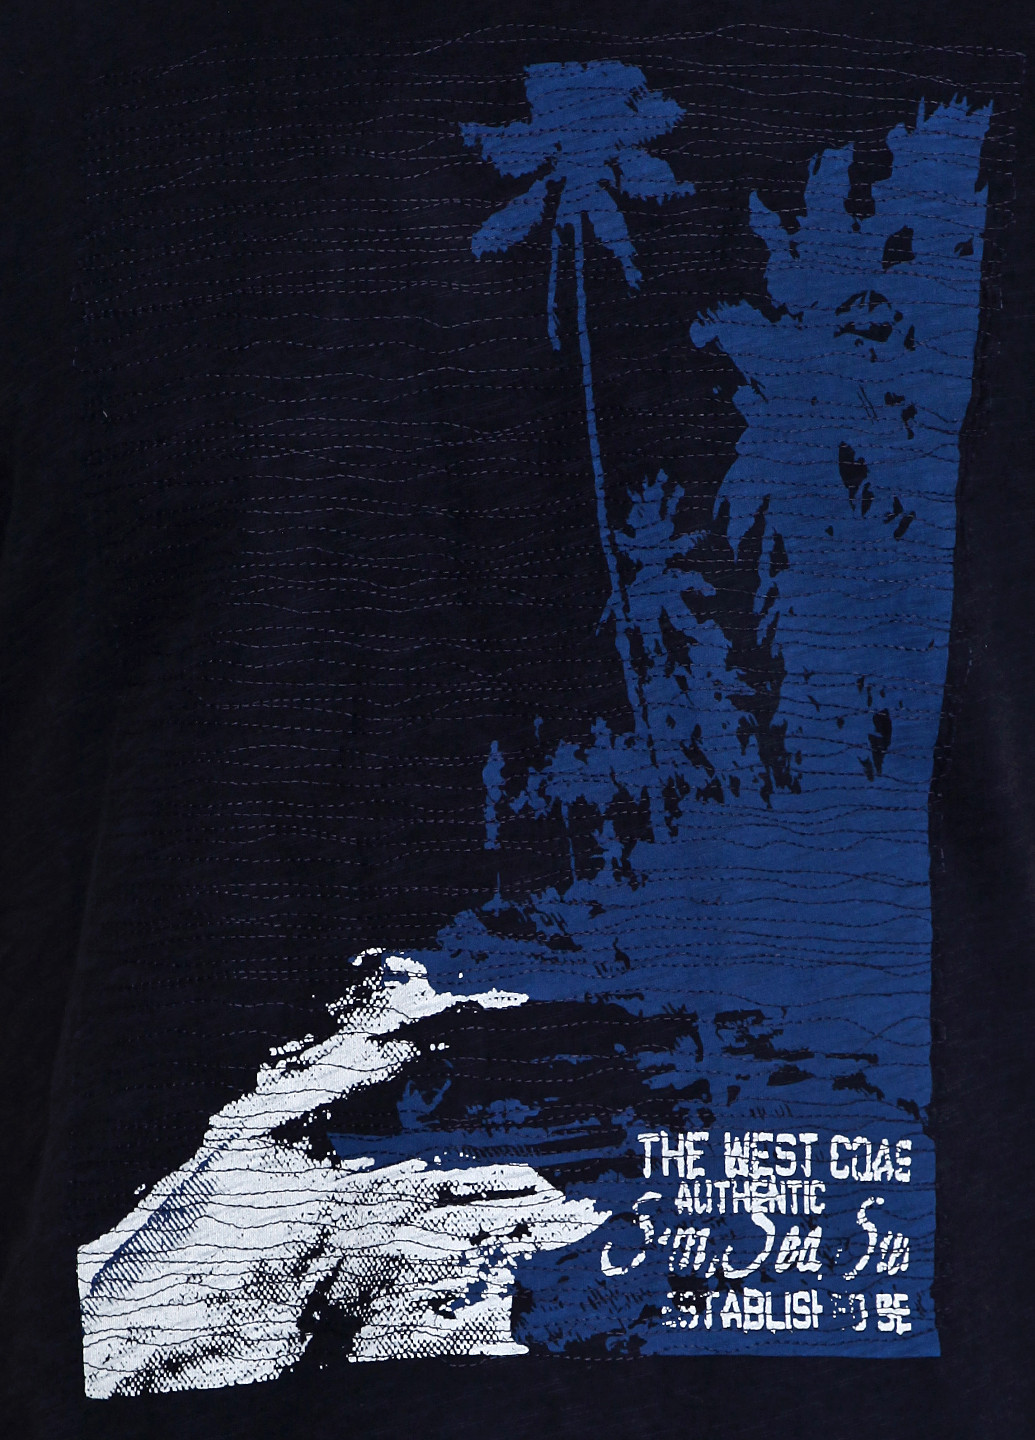 Темно-синяя футболка Mons